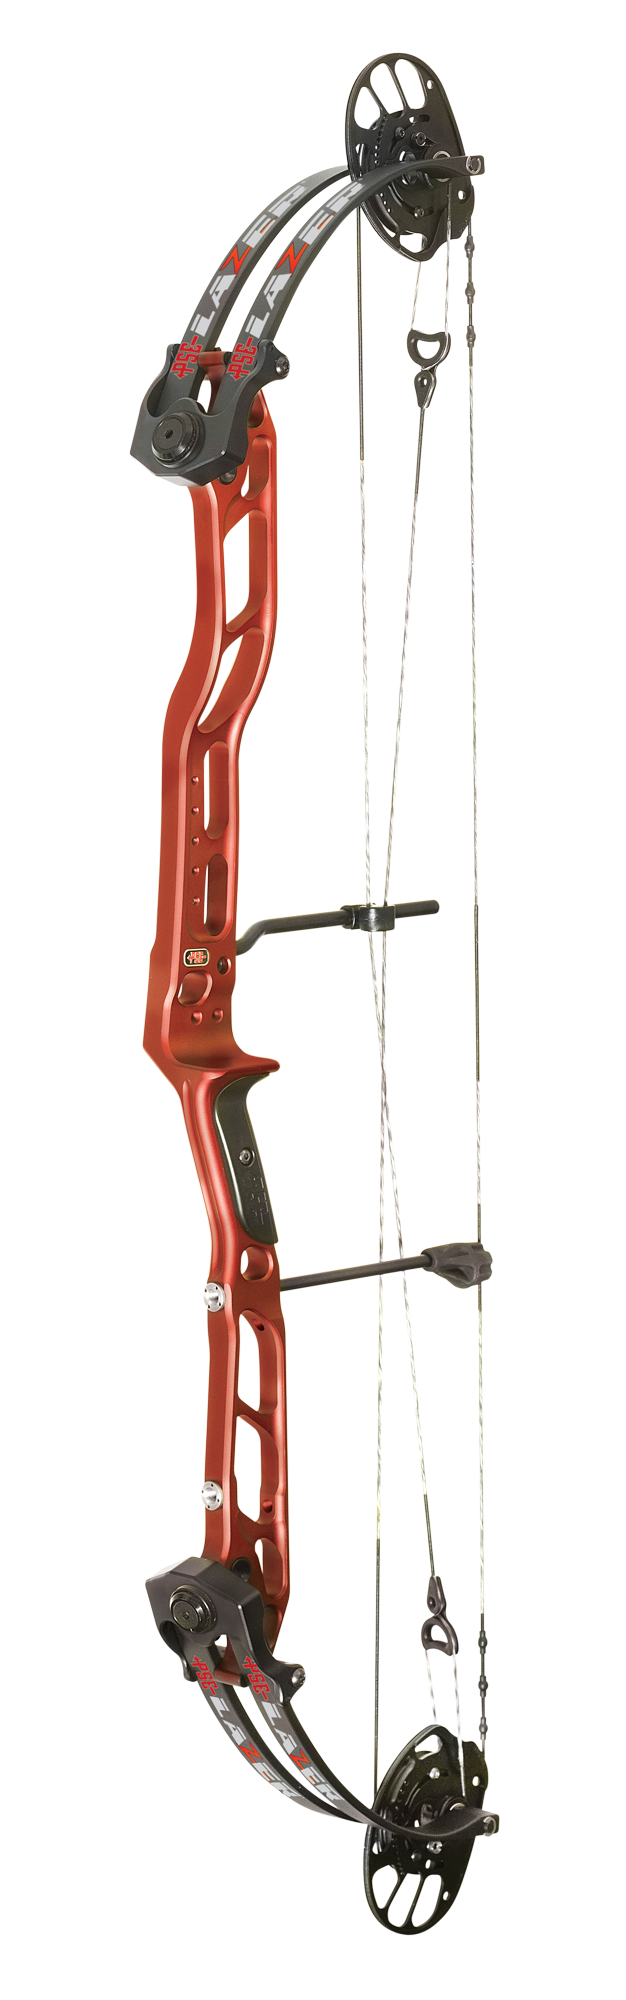 PSE Lazer Bow Urban Archery Pty Ltd